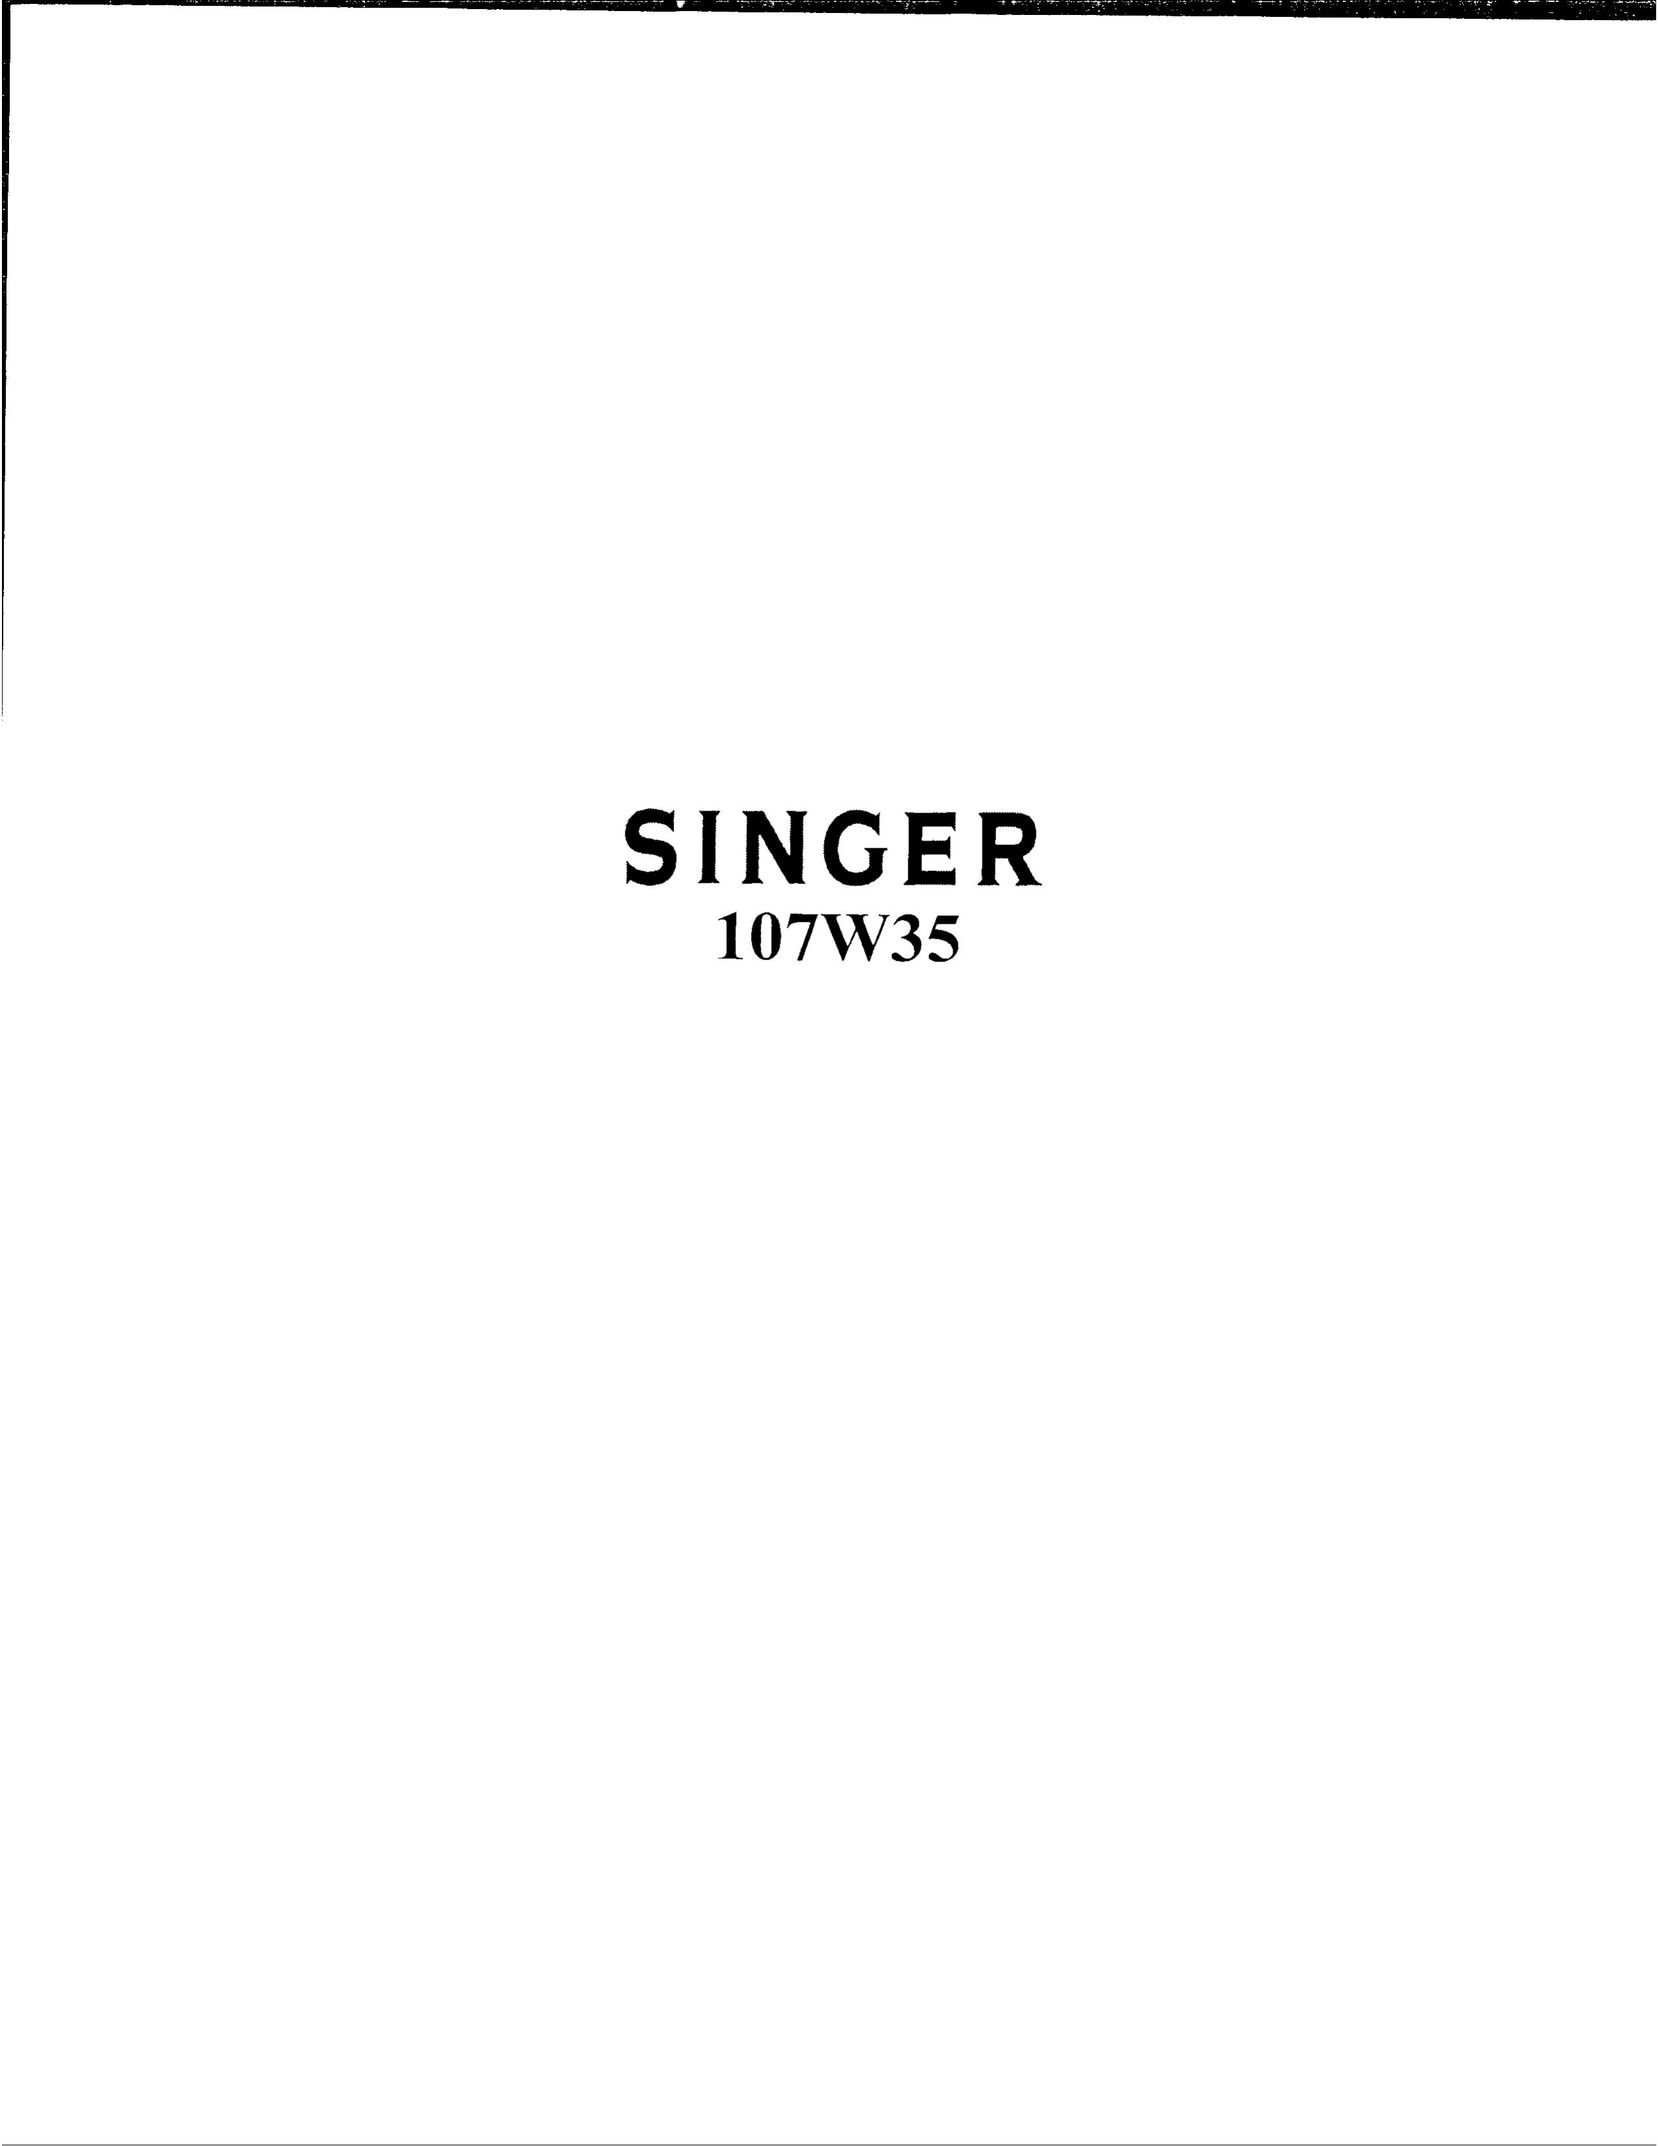 Singer 107W35 Sewing Machine User Manual